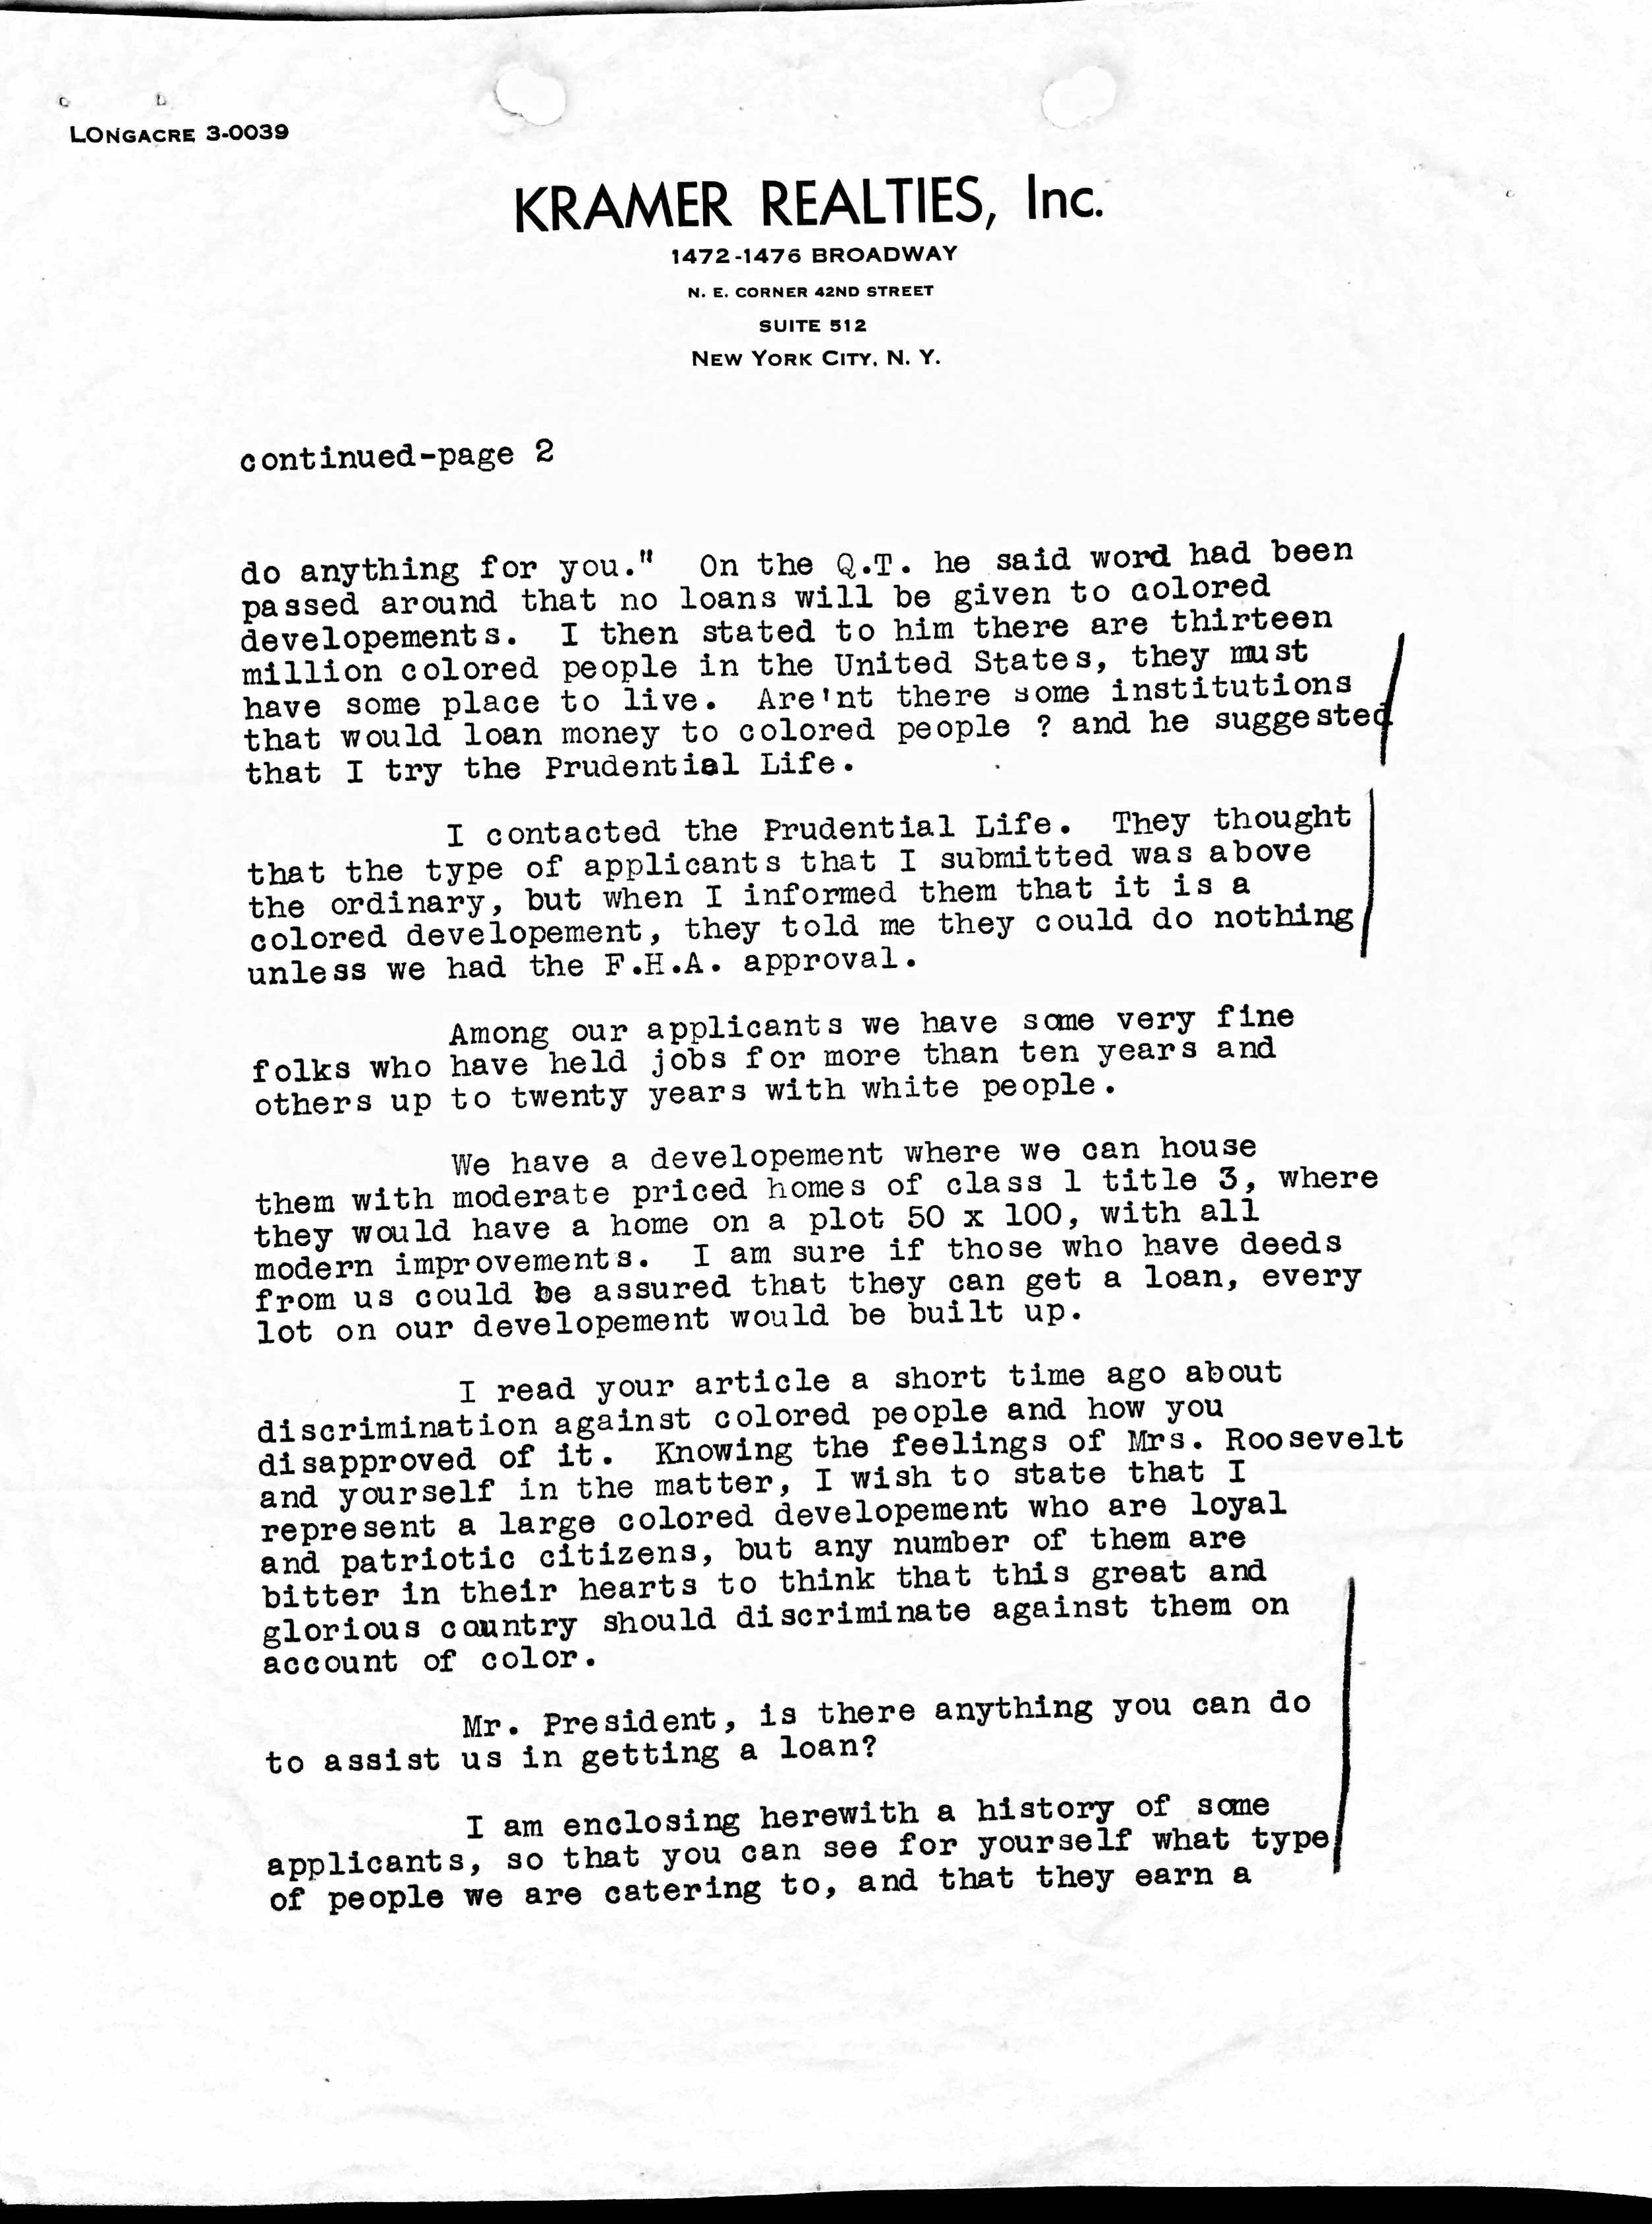 Harry Kramer to FDR letter - Apr 7 2022 - 1-24 PM - p2.jpg